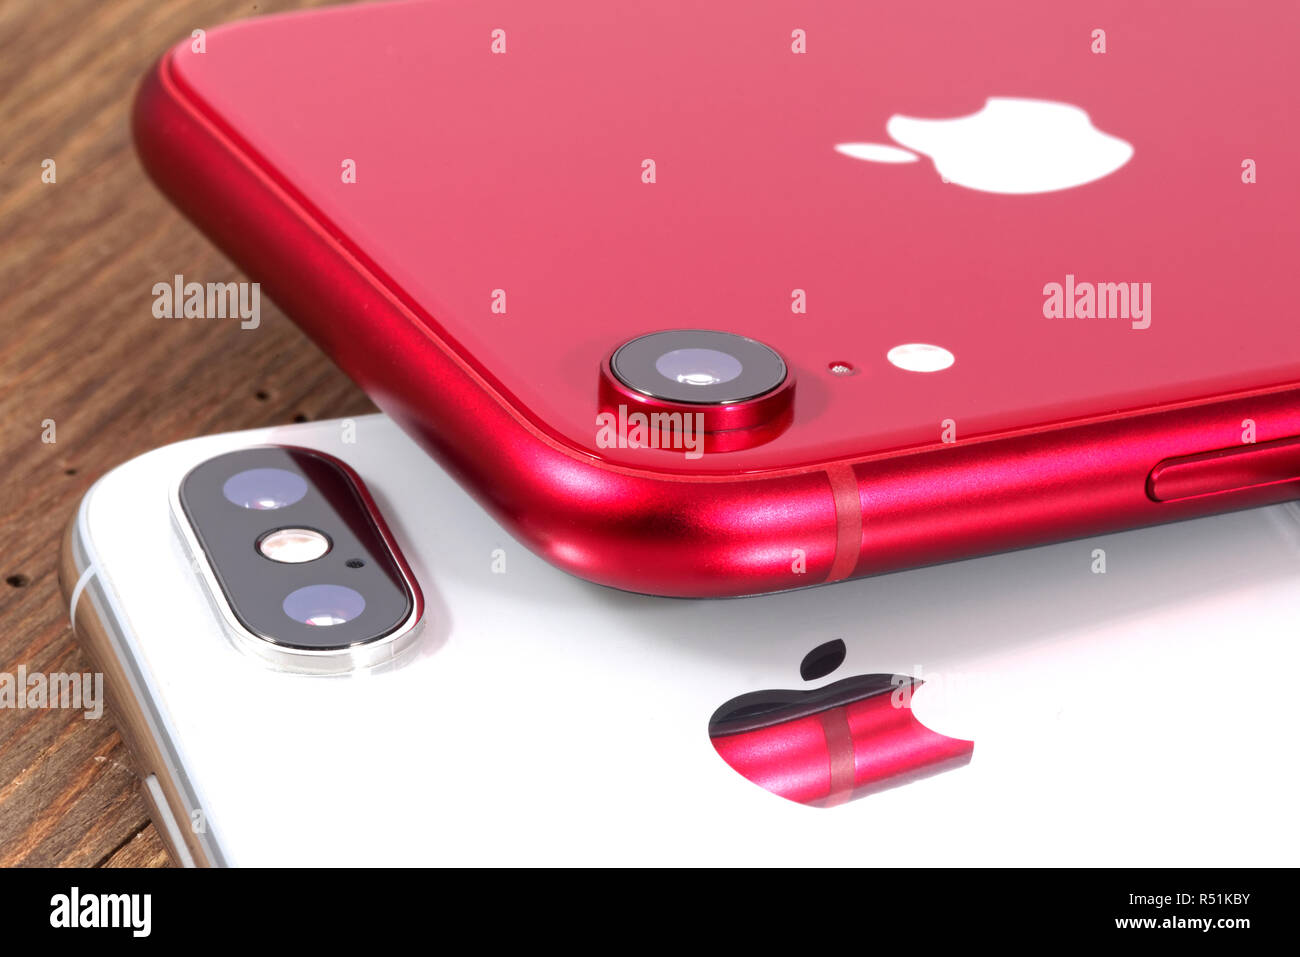 Koszalin, Polen - November 29, 2018: Silber iPhone Xs und rot iPhone XR. Das iPhone Xs und iPhone XR ist smart phone mit Multi-touch-Bildschirms erstellt Stockfoto